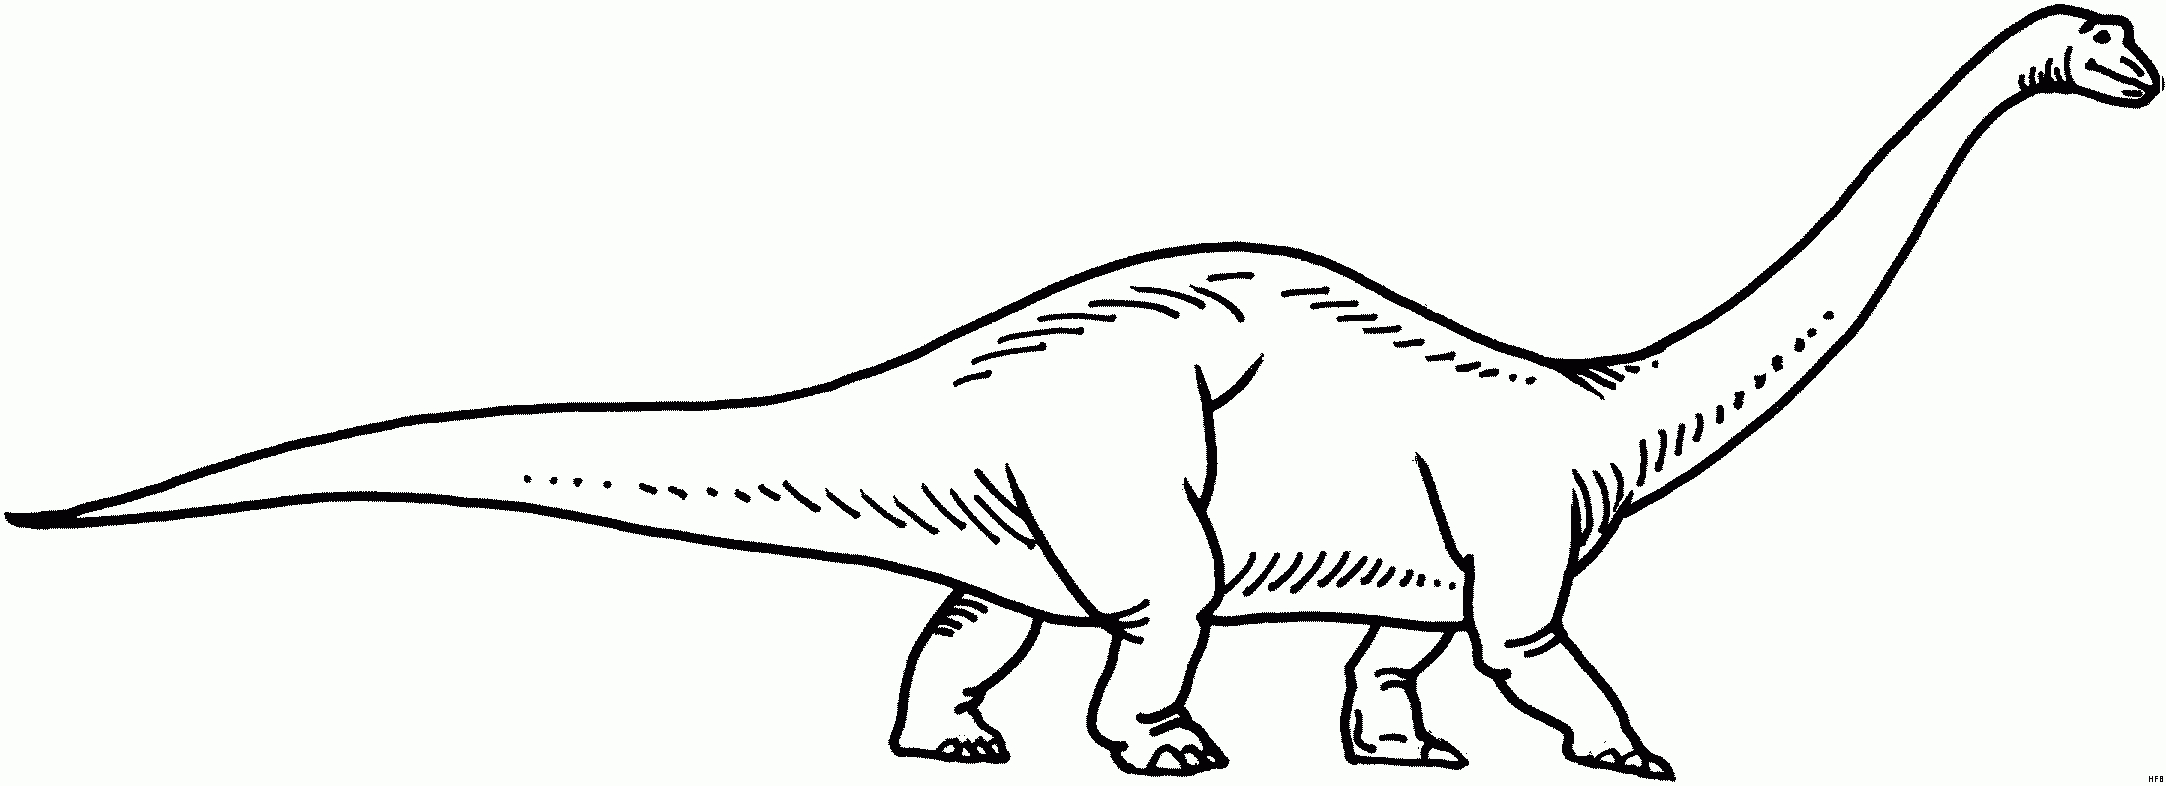 Langhals Dino Malvorlage | Coloring And Malvorlagan innen Ausmalbilder Kostenlos Dinosaurier